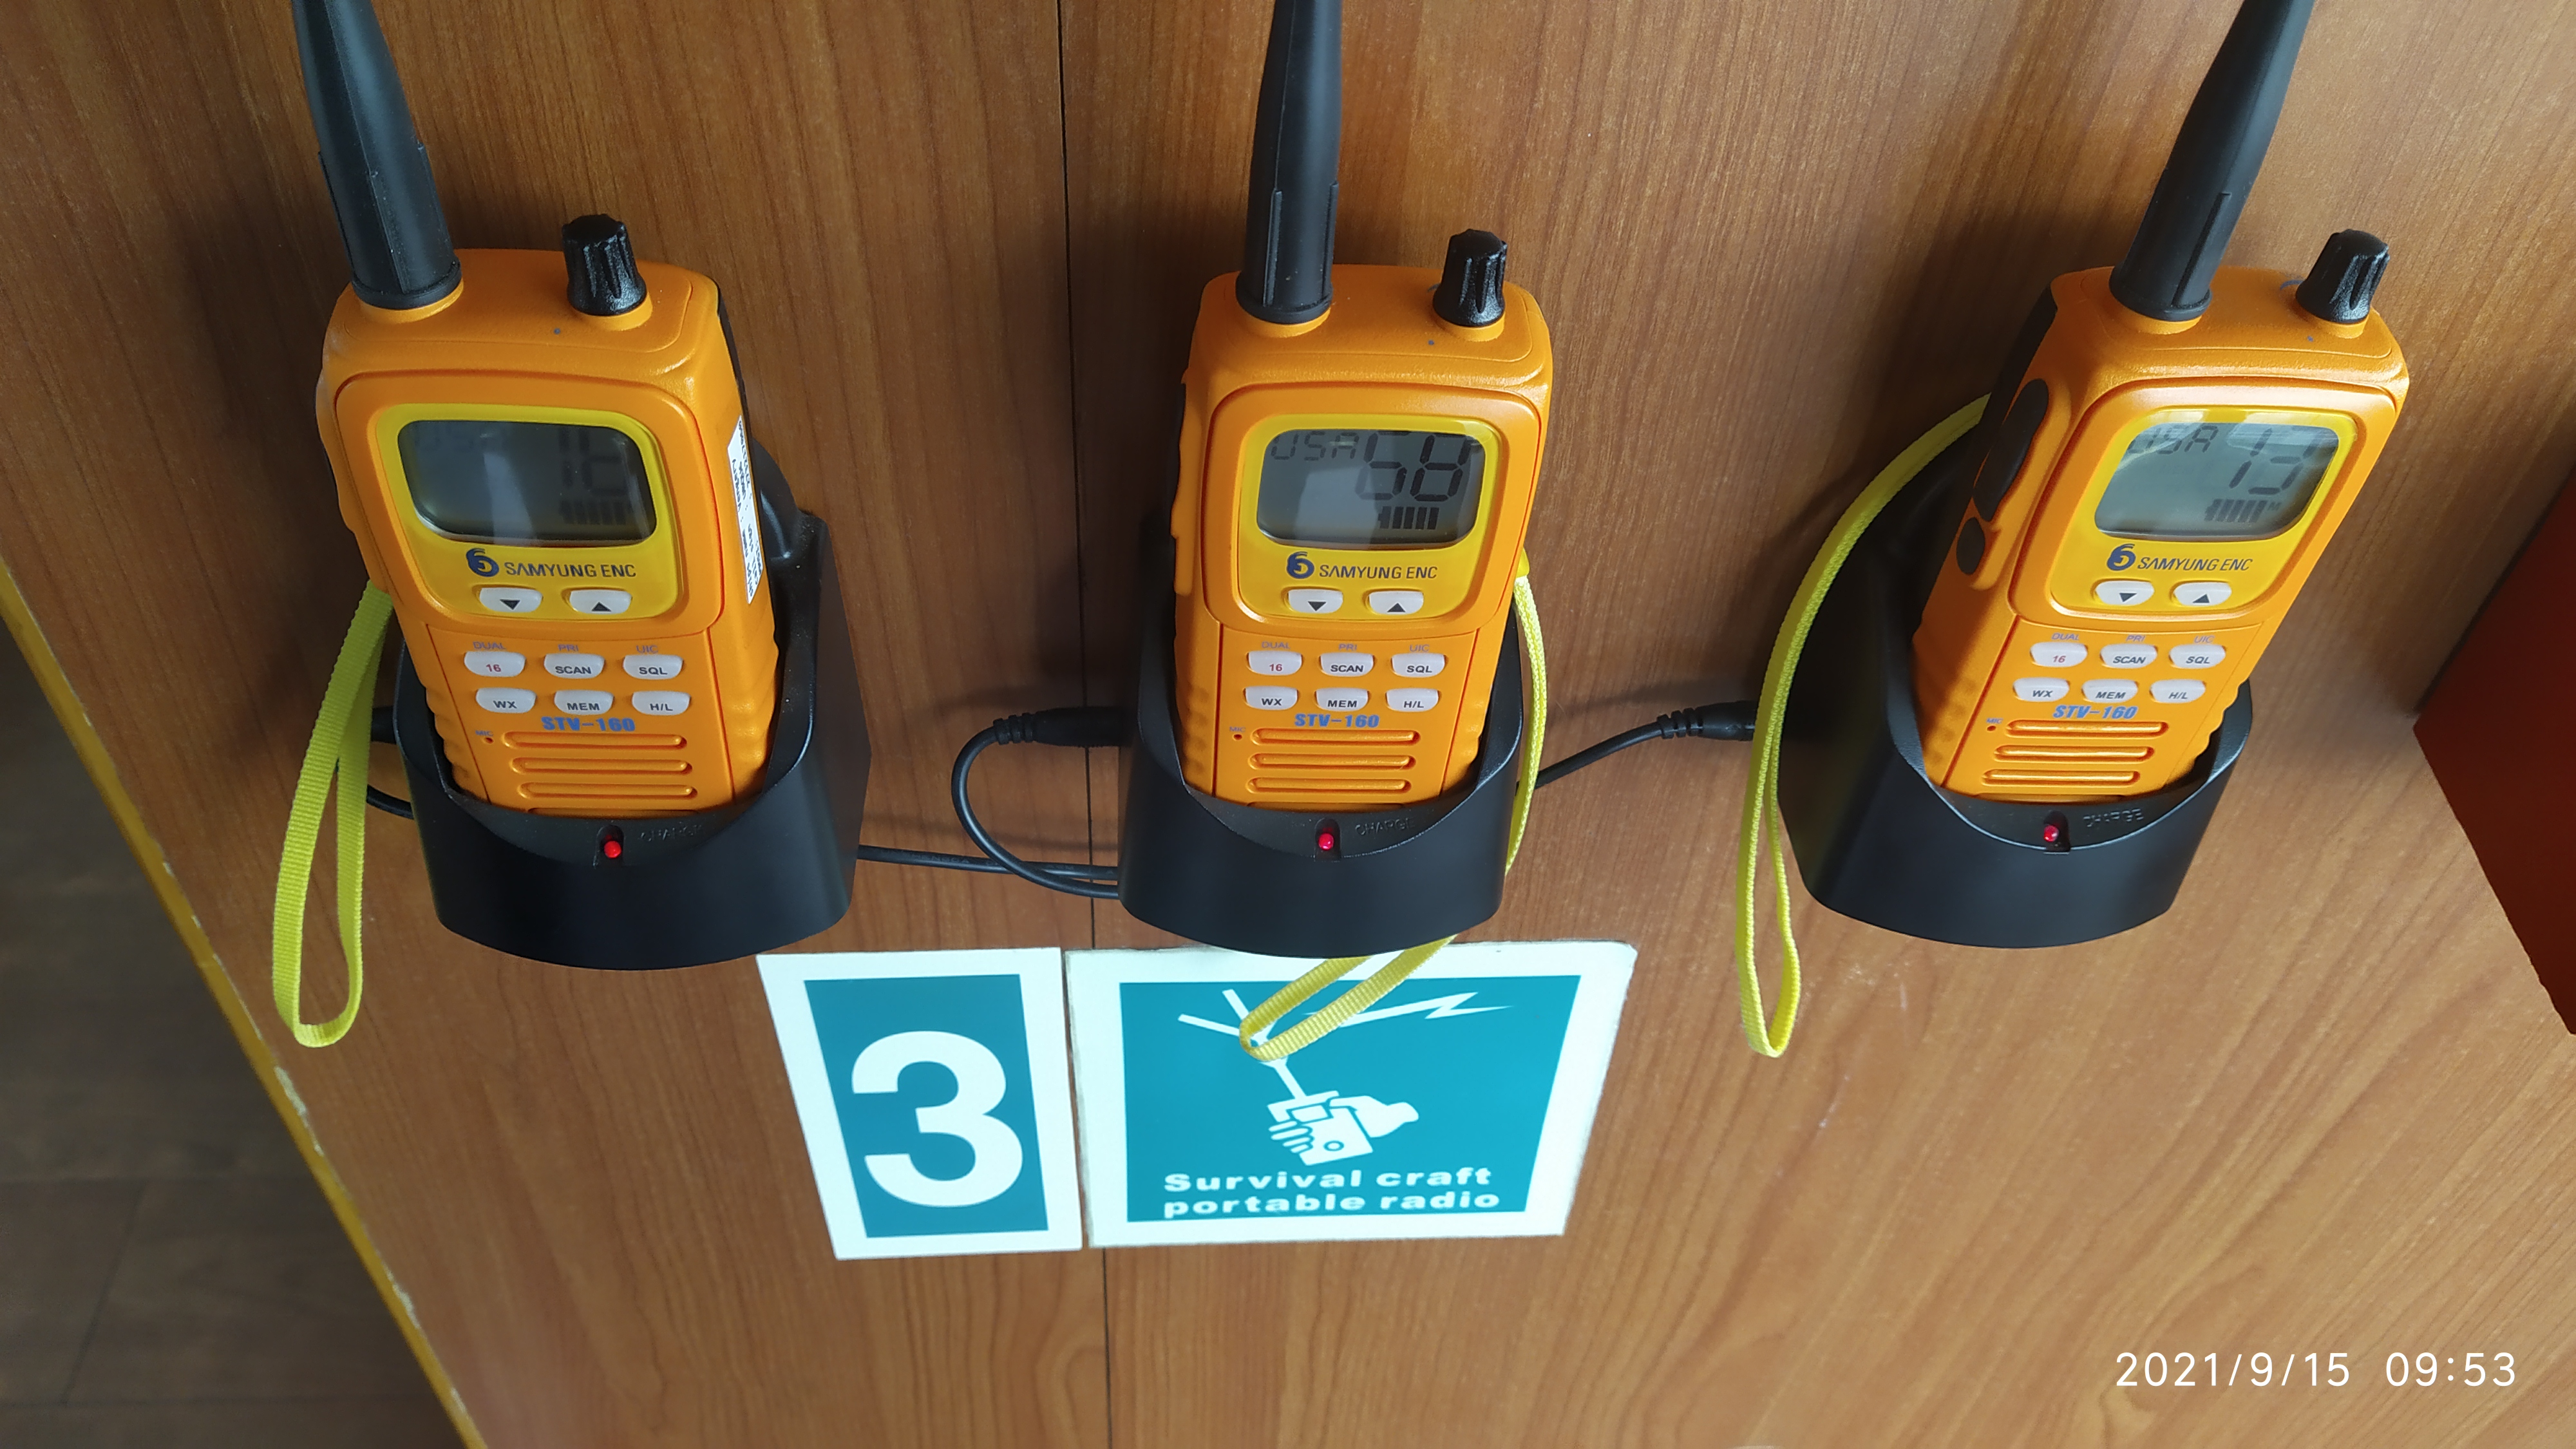 Носимые УКВ радиостанции, предназначенные для целей поиска и спасения. Потому оранжевые.